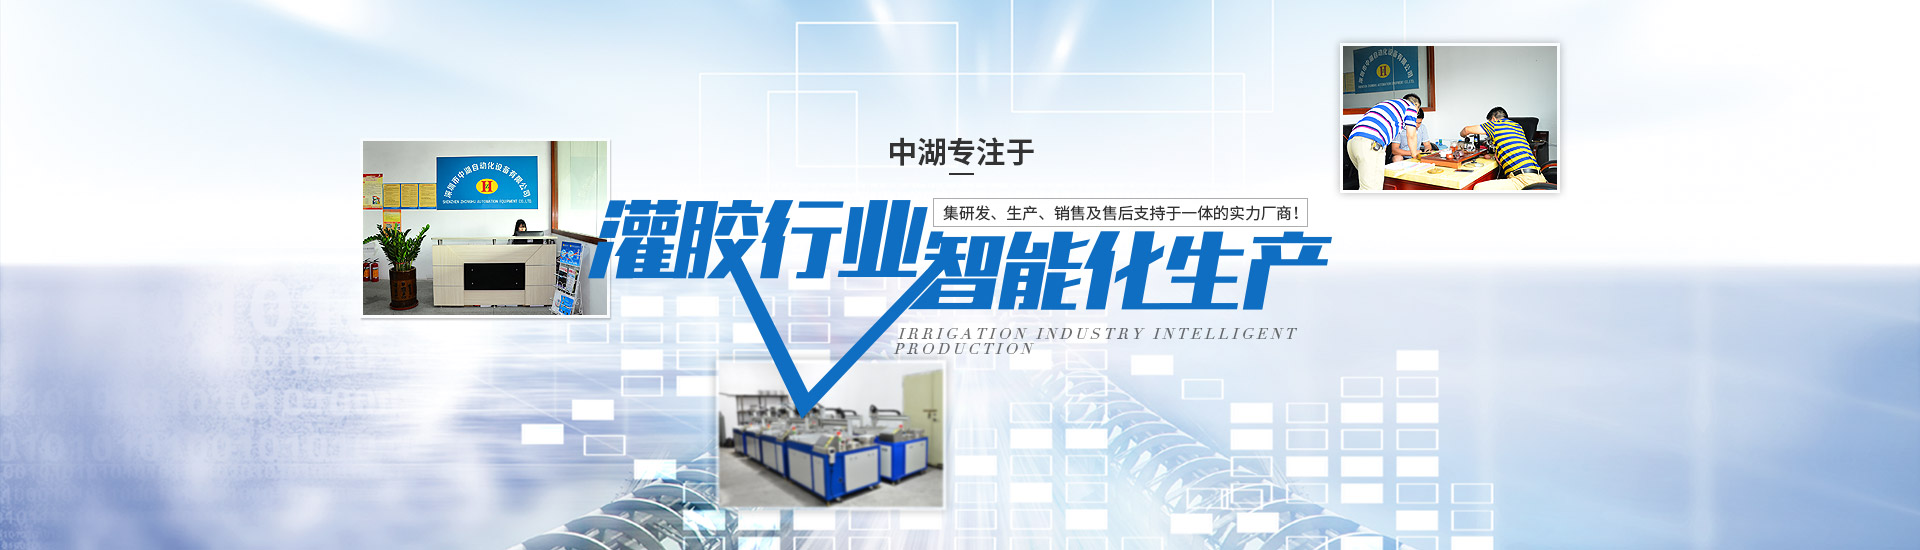 專注于(yu)灌膠機行業智能化生產